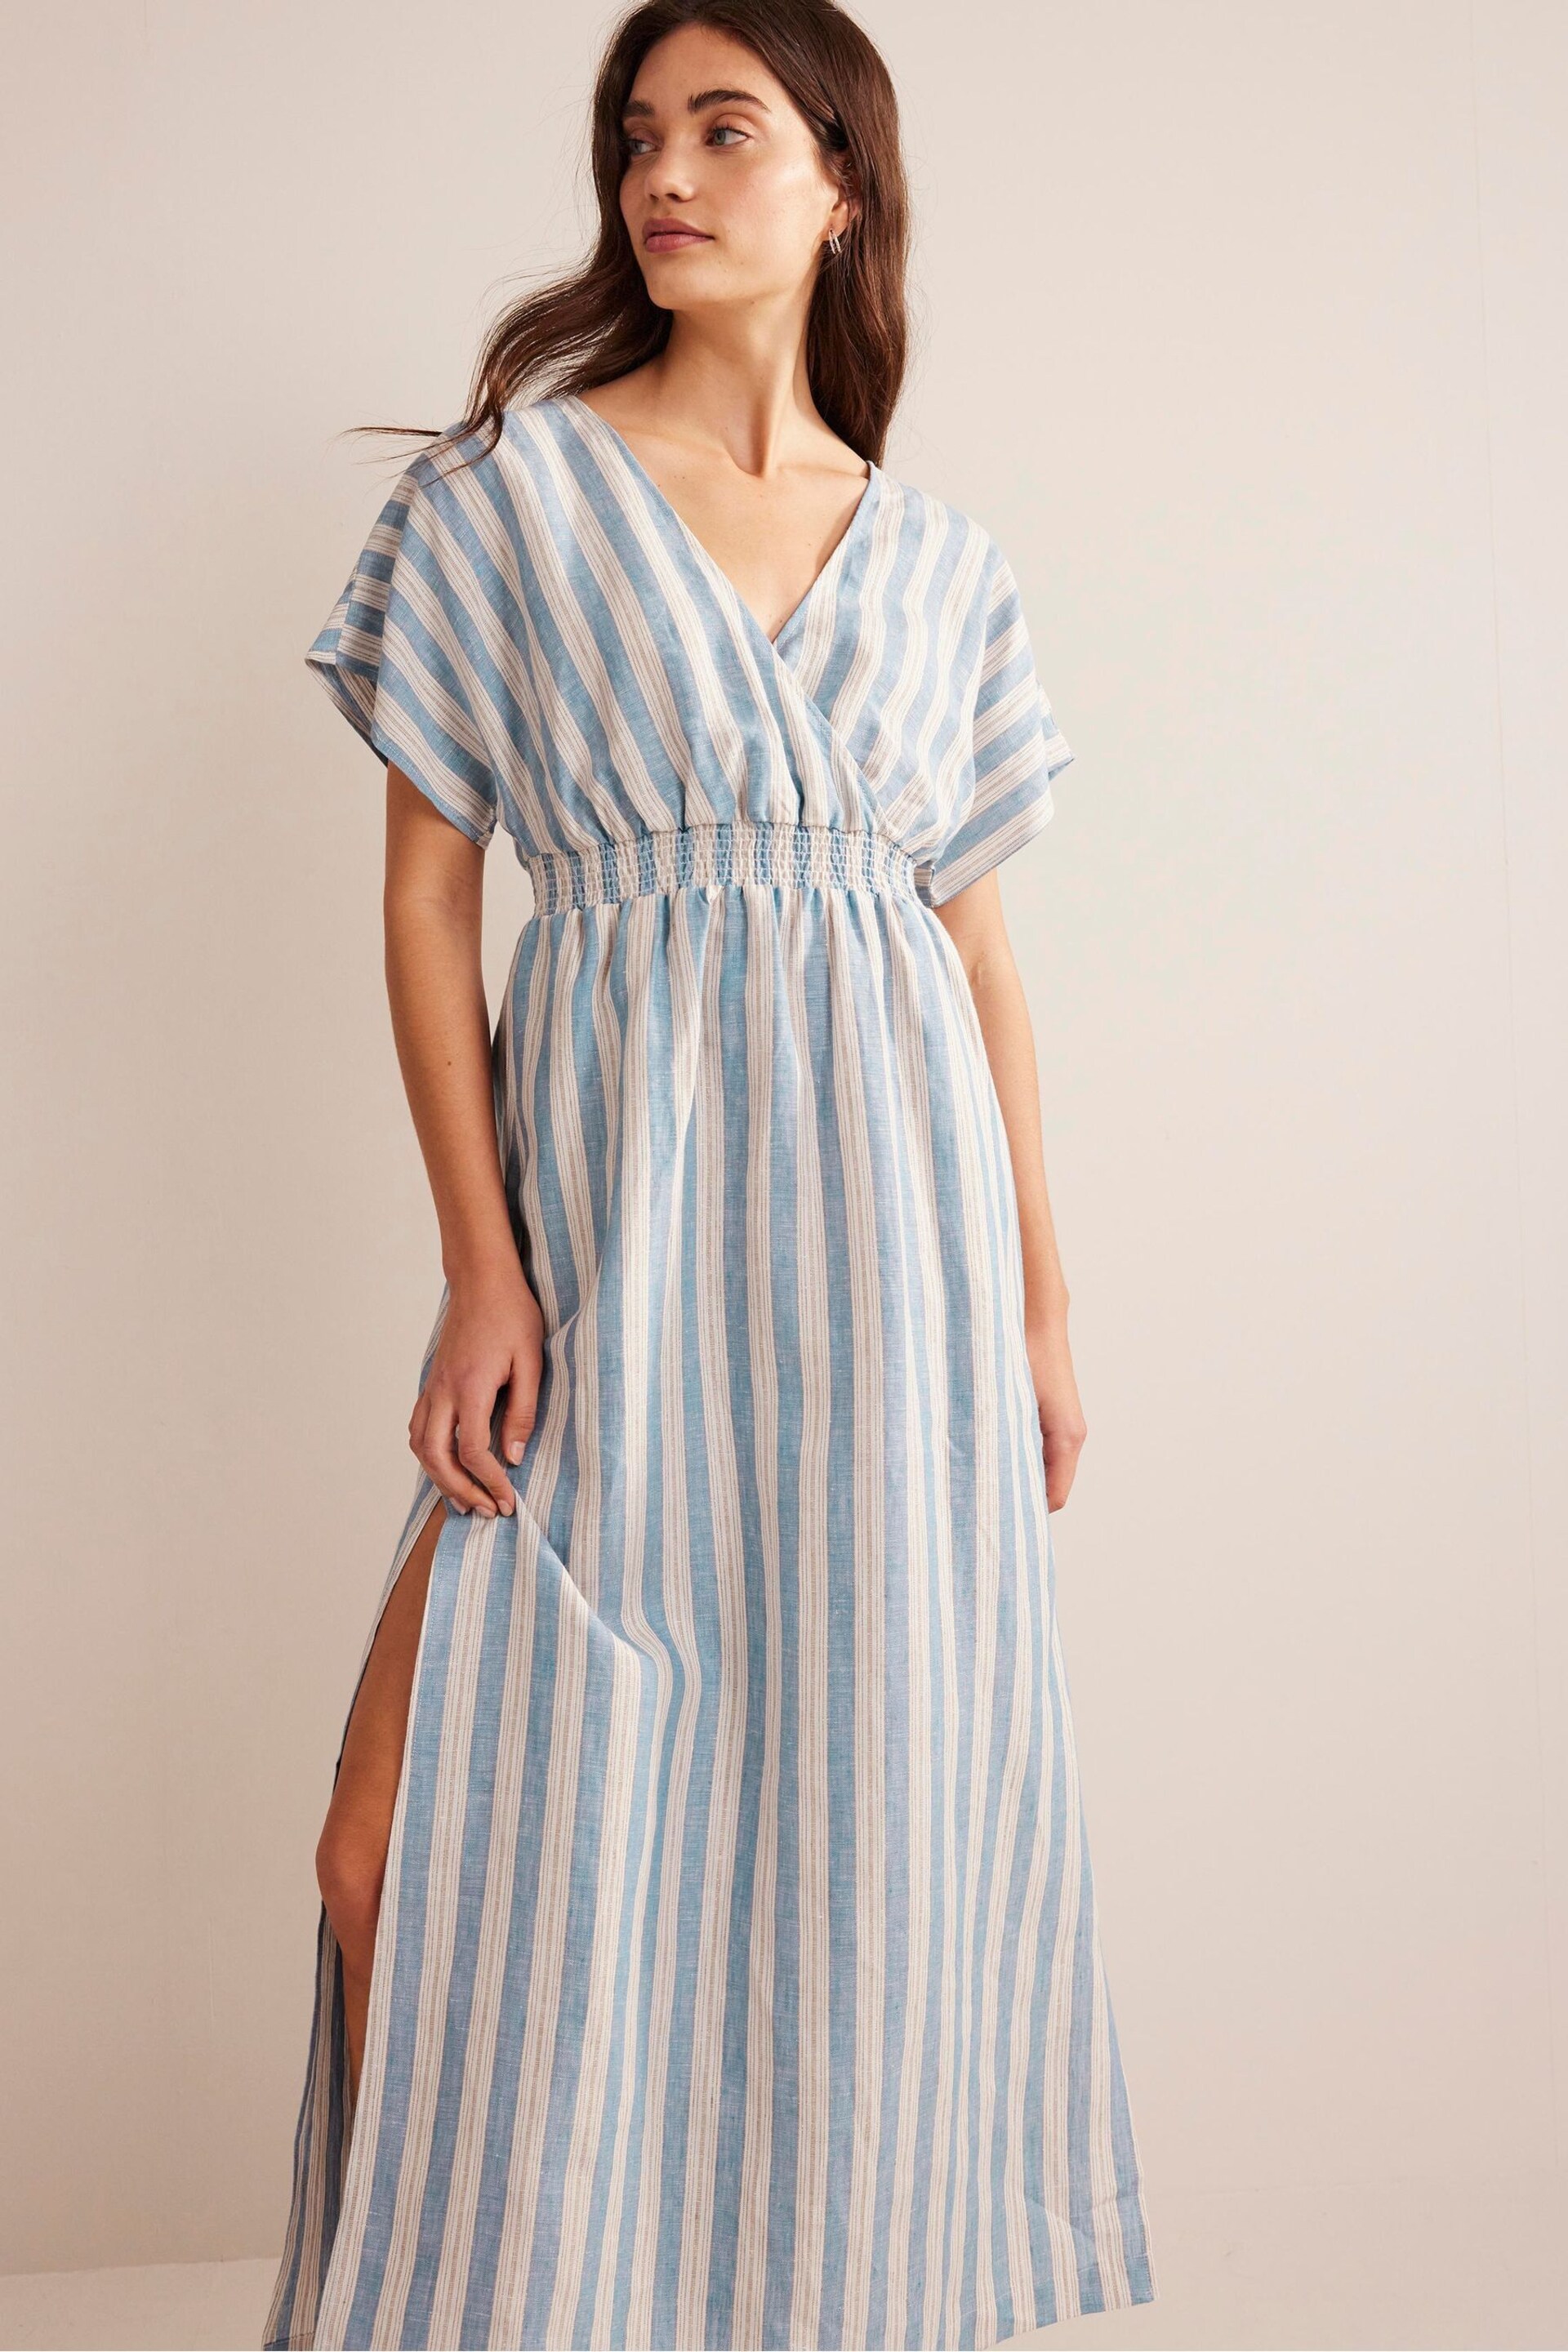 Boden Blue Linen Kaftan Maxi Dress - Image 3 of 7